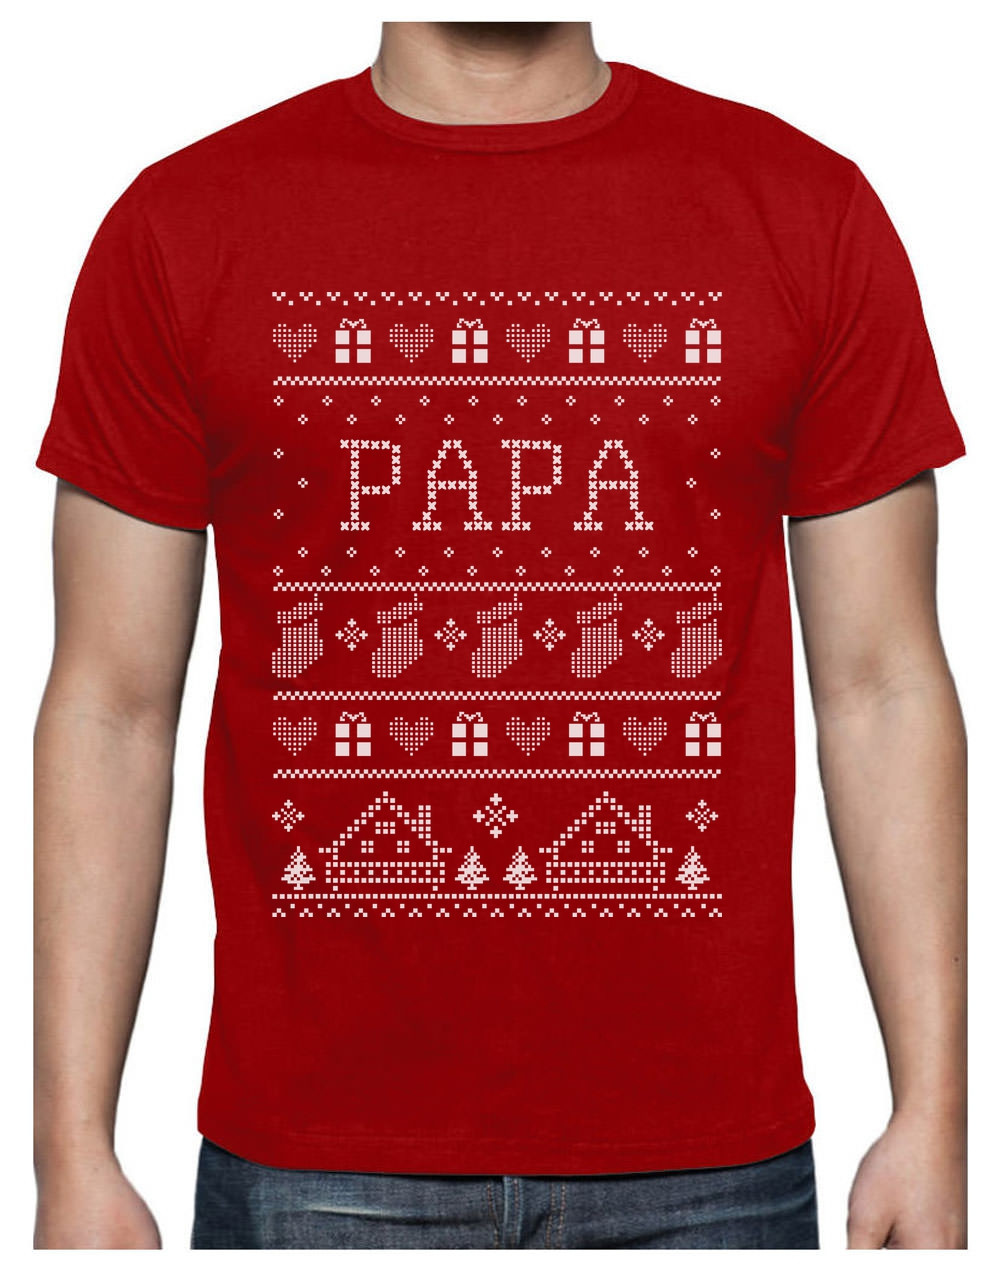 T Shirt De Noel Cadeau Papa Famille Assortis Pour Noel T Shirt Homme Home Greenturtle